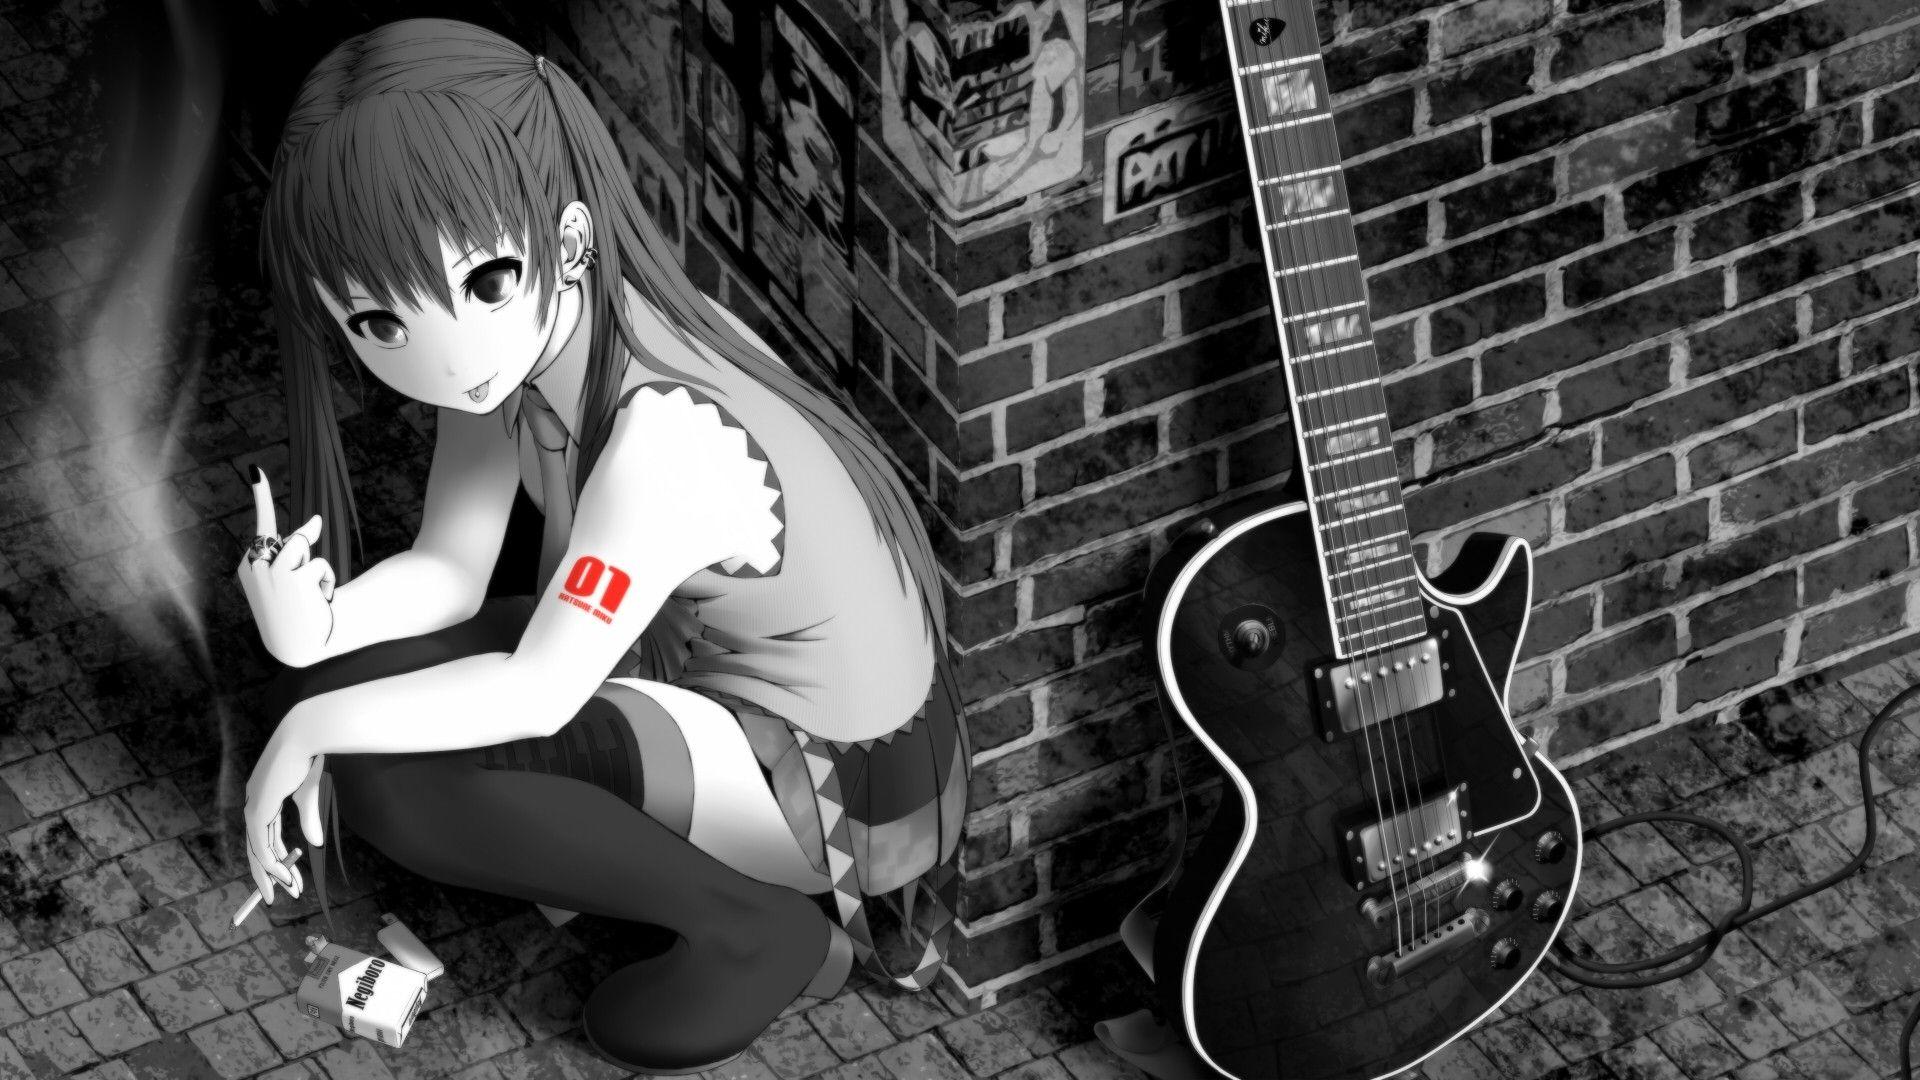 Điều gì tuyệt vời hơn là những cô gái Anime đang chơi đàn guitar? Bức ảnh này chứa đựng nhiều cảm xúc thăng hoa khi bạn ngắm nhìn mỗi chi tiết trong từng bức ảnh.